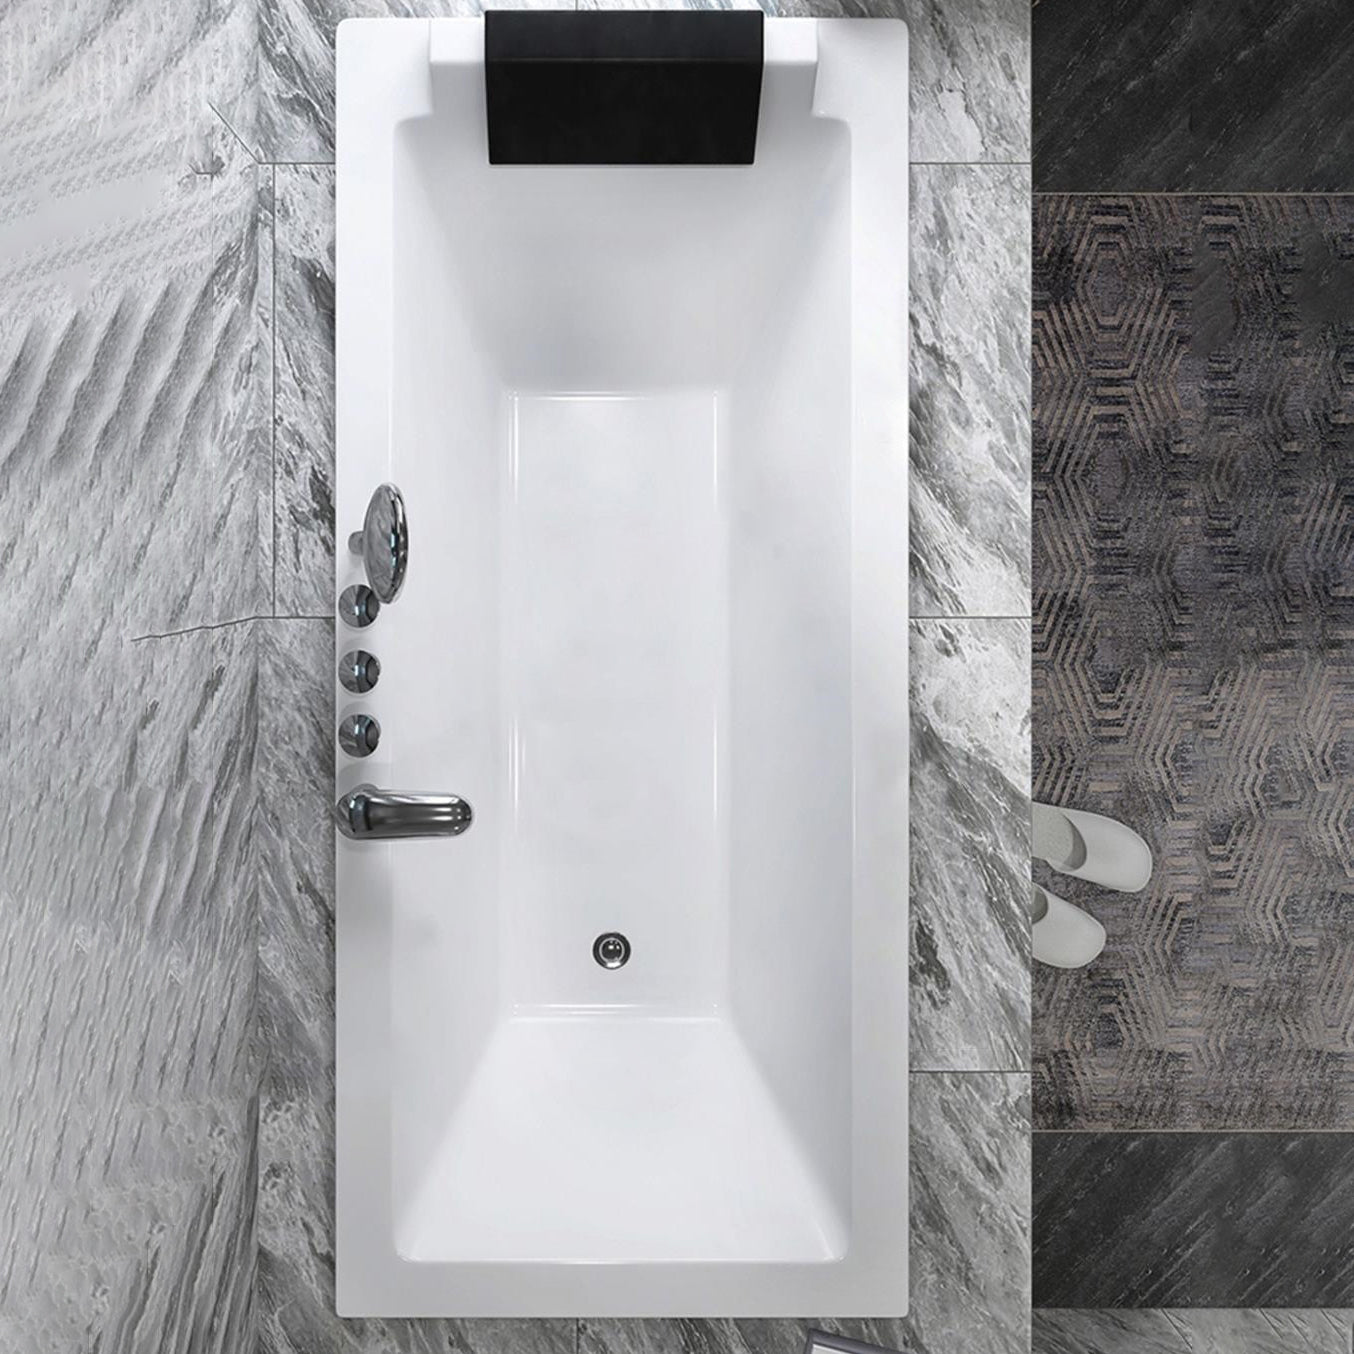 Drop-in White Bath Modern Soaking Acrylic Rectangular Bathtub 55"L x 29.5"W x 18"H Tub with Silver 5-Piece Set Clearhalo 'Bathroom Remodel & Bathroom Fixtures' 'Bathtubs' 'Home Improvement' 'home_improvement' 'home_improvement_bathtubs' 'Showers & Bathtubs' 7050002